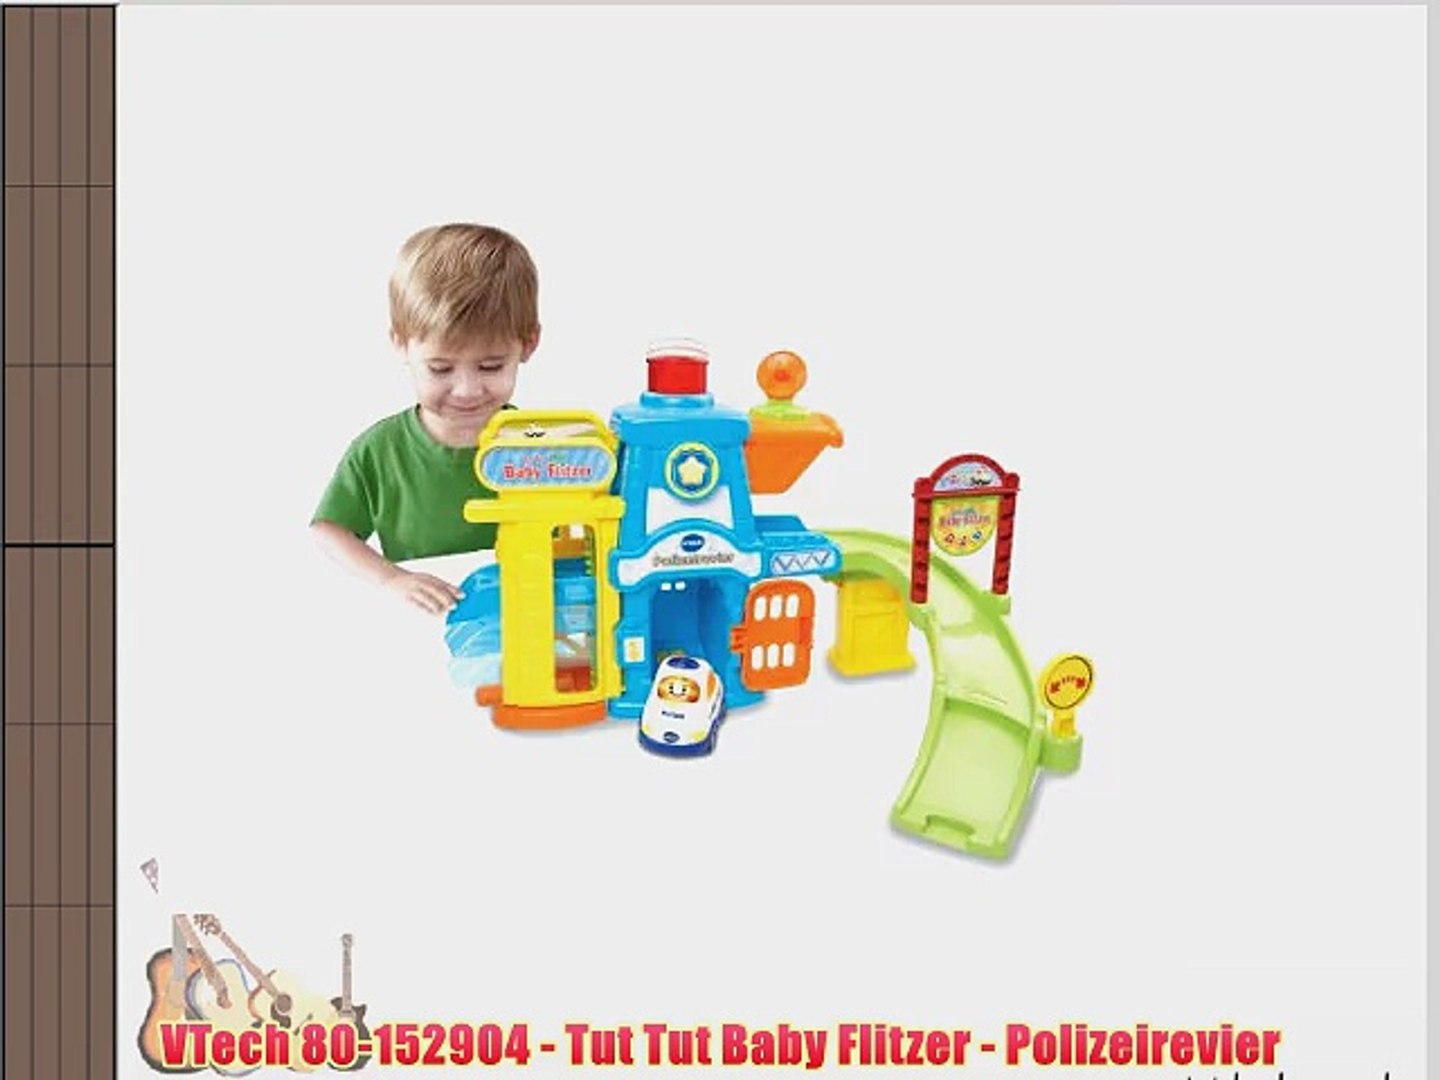 VTech 80-152904 - Tut Tut Baby Flitzer - Polizeirevier - video dailymotion